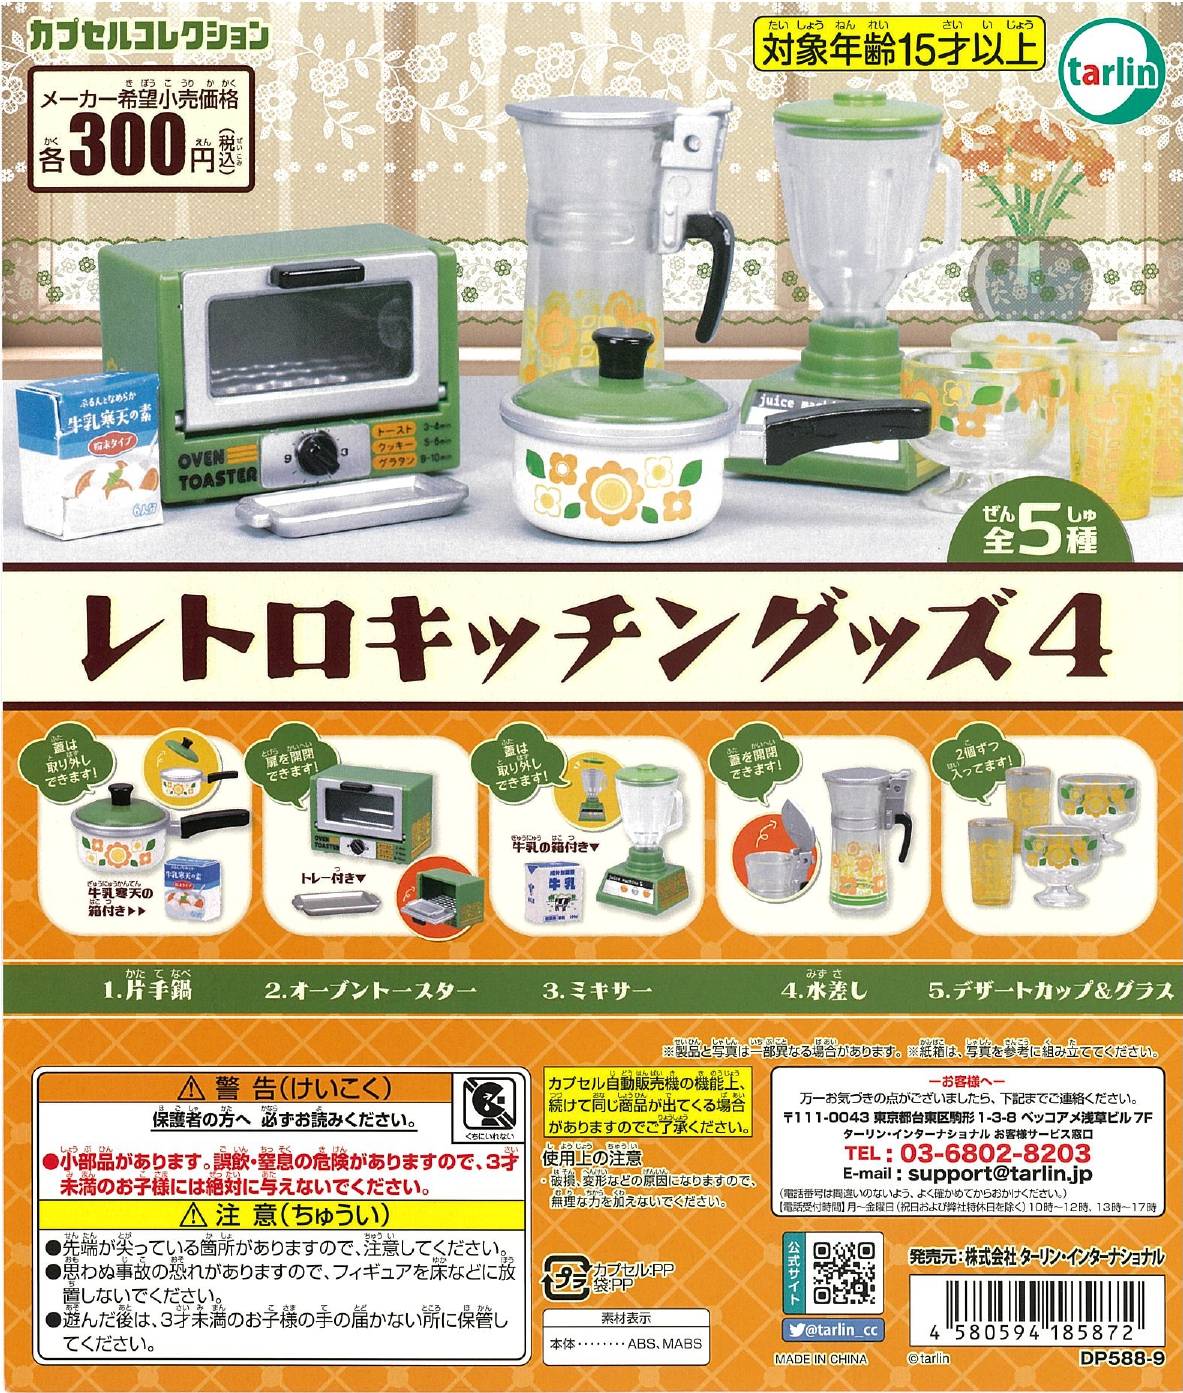 CP2589 Retro Kitchen Goods 4